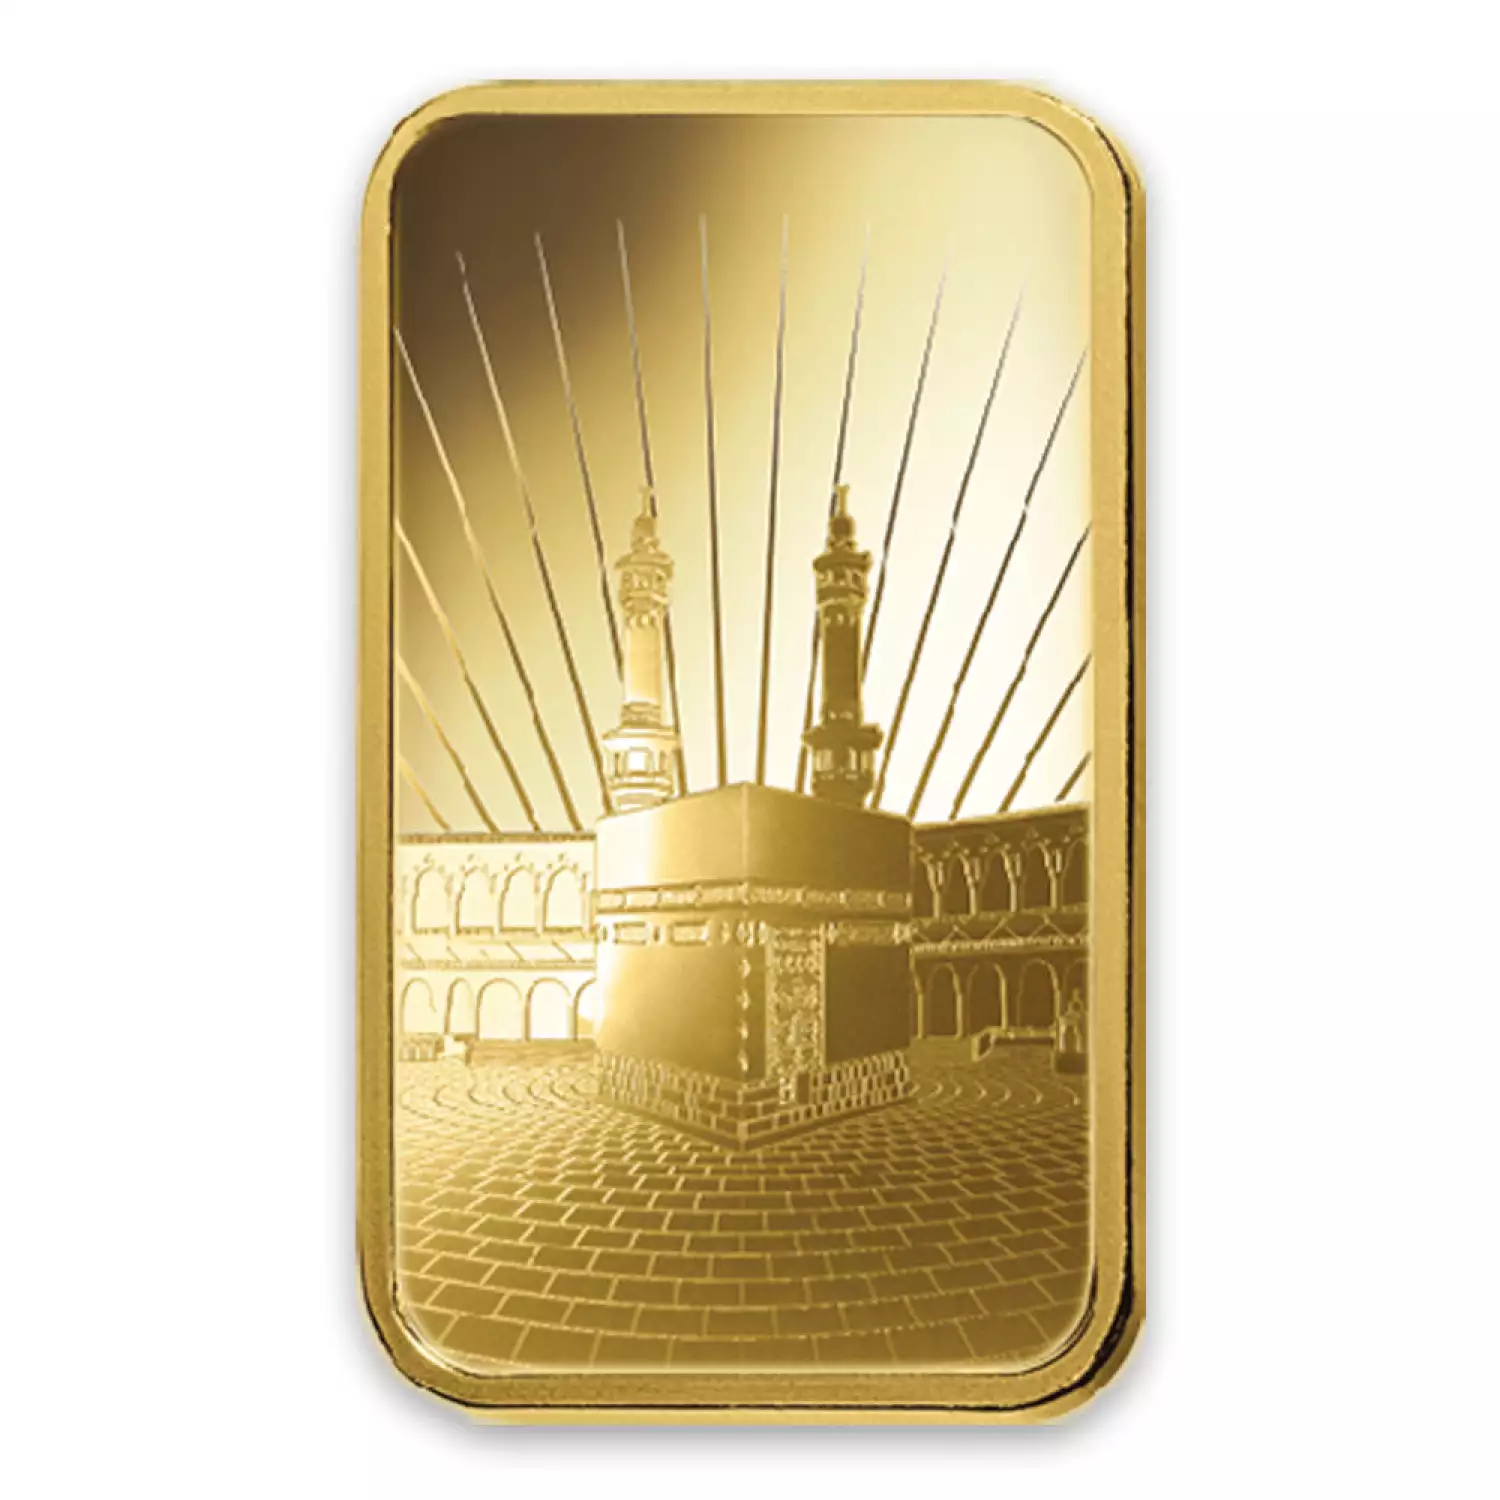 5g Ka`Bah. Mecca Gold Bar | PAMP Suisse Gold Bars - Harlan J. Berk Inc.